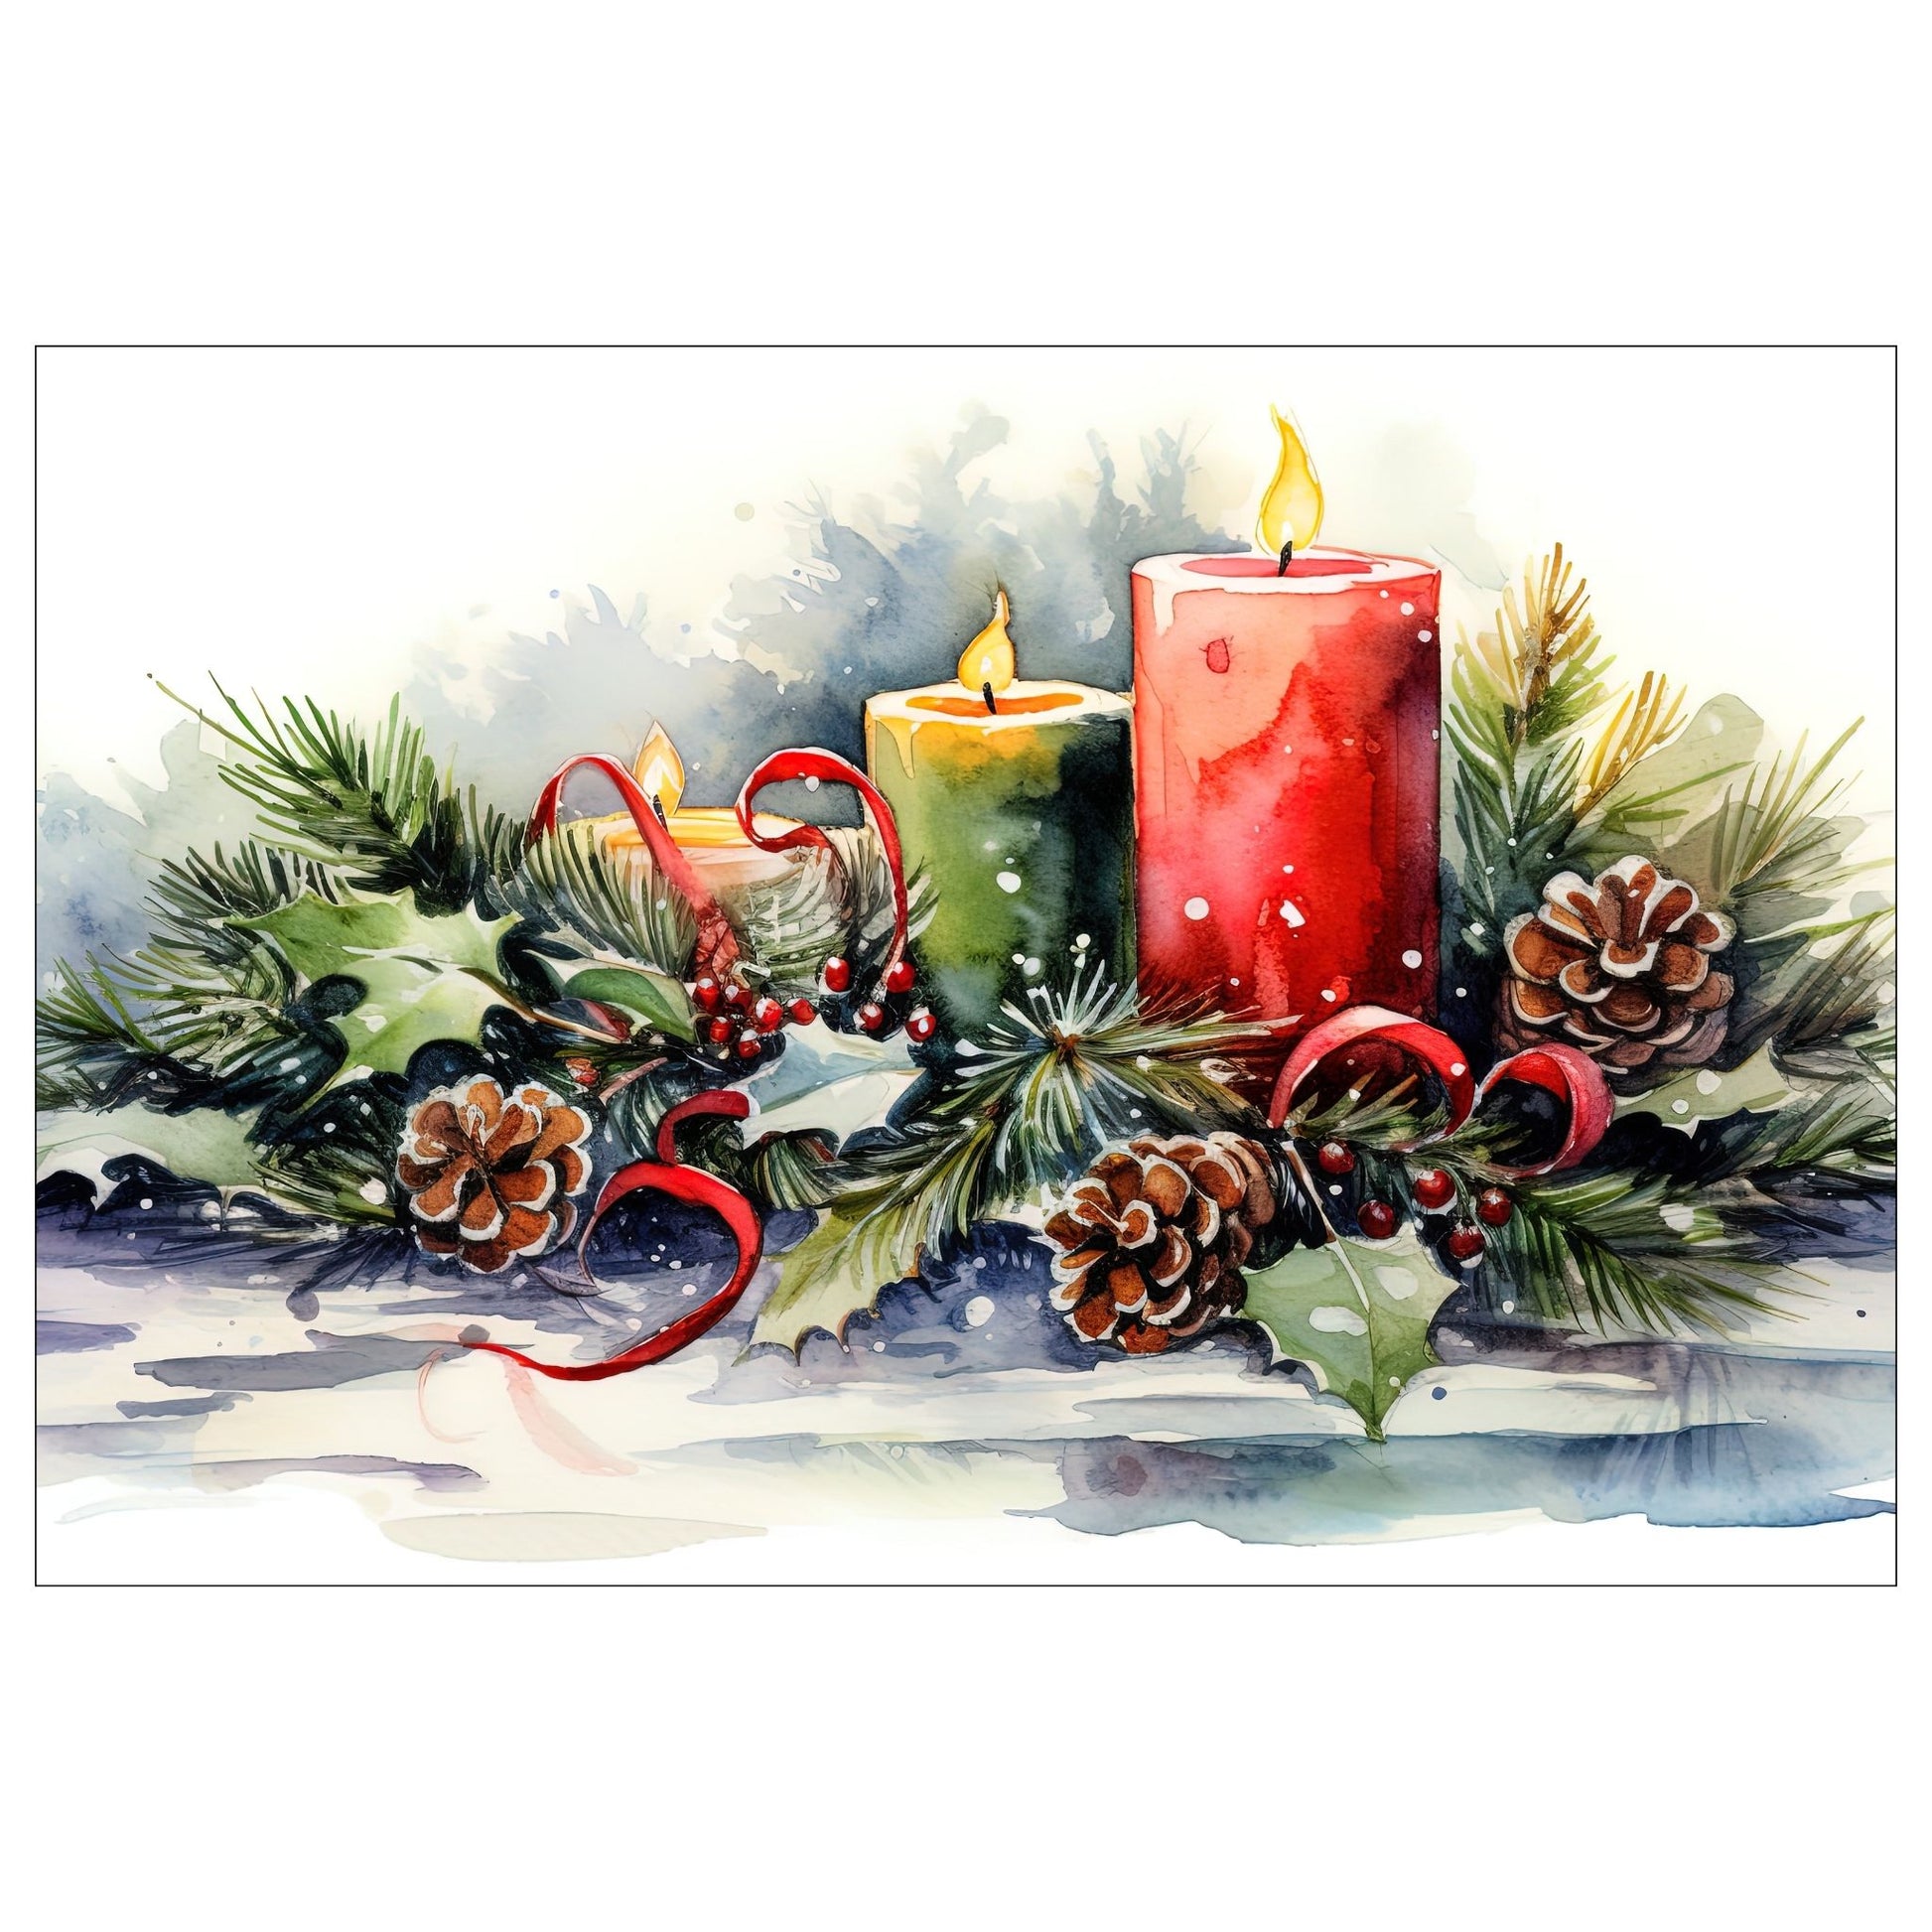 Dekorativt, grafisk julekort av av en juledekorasjon med tre kubbelys som brenner, furubar og furukongler. Motivet har et nostalgisk preg.